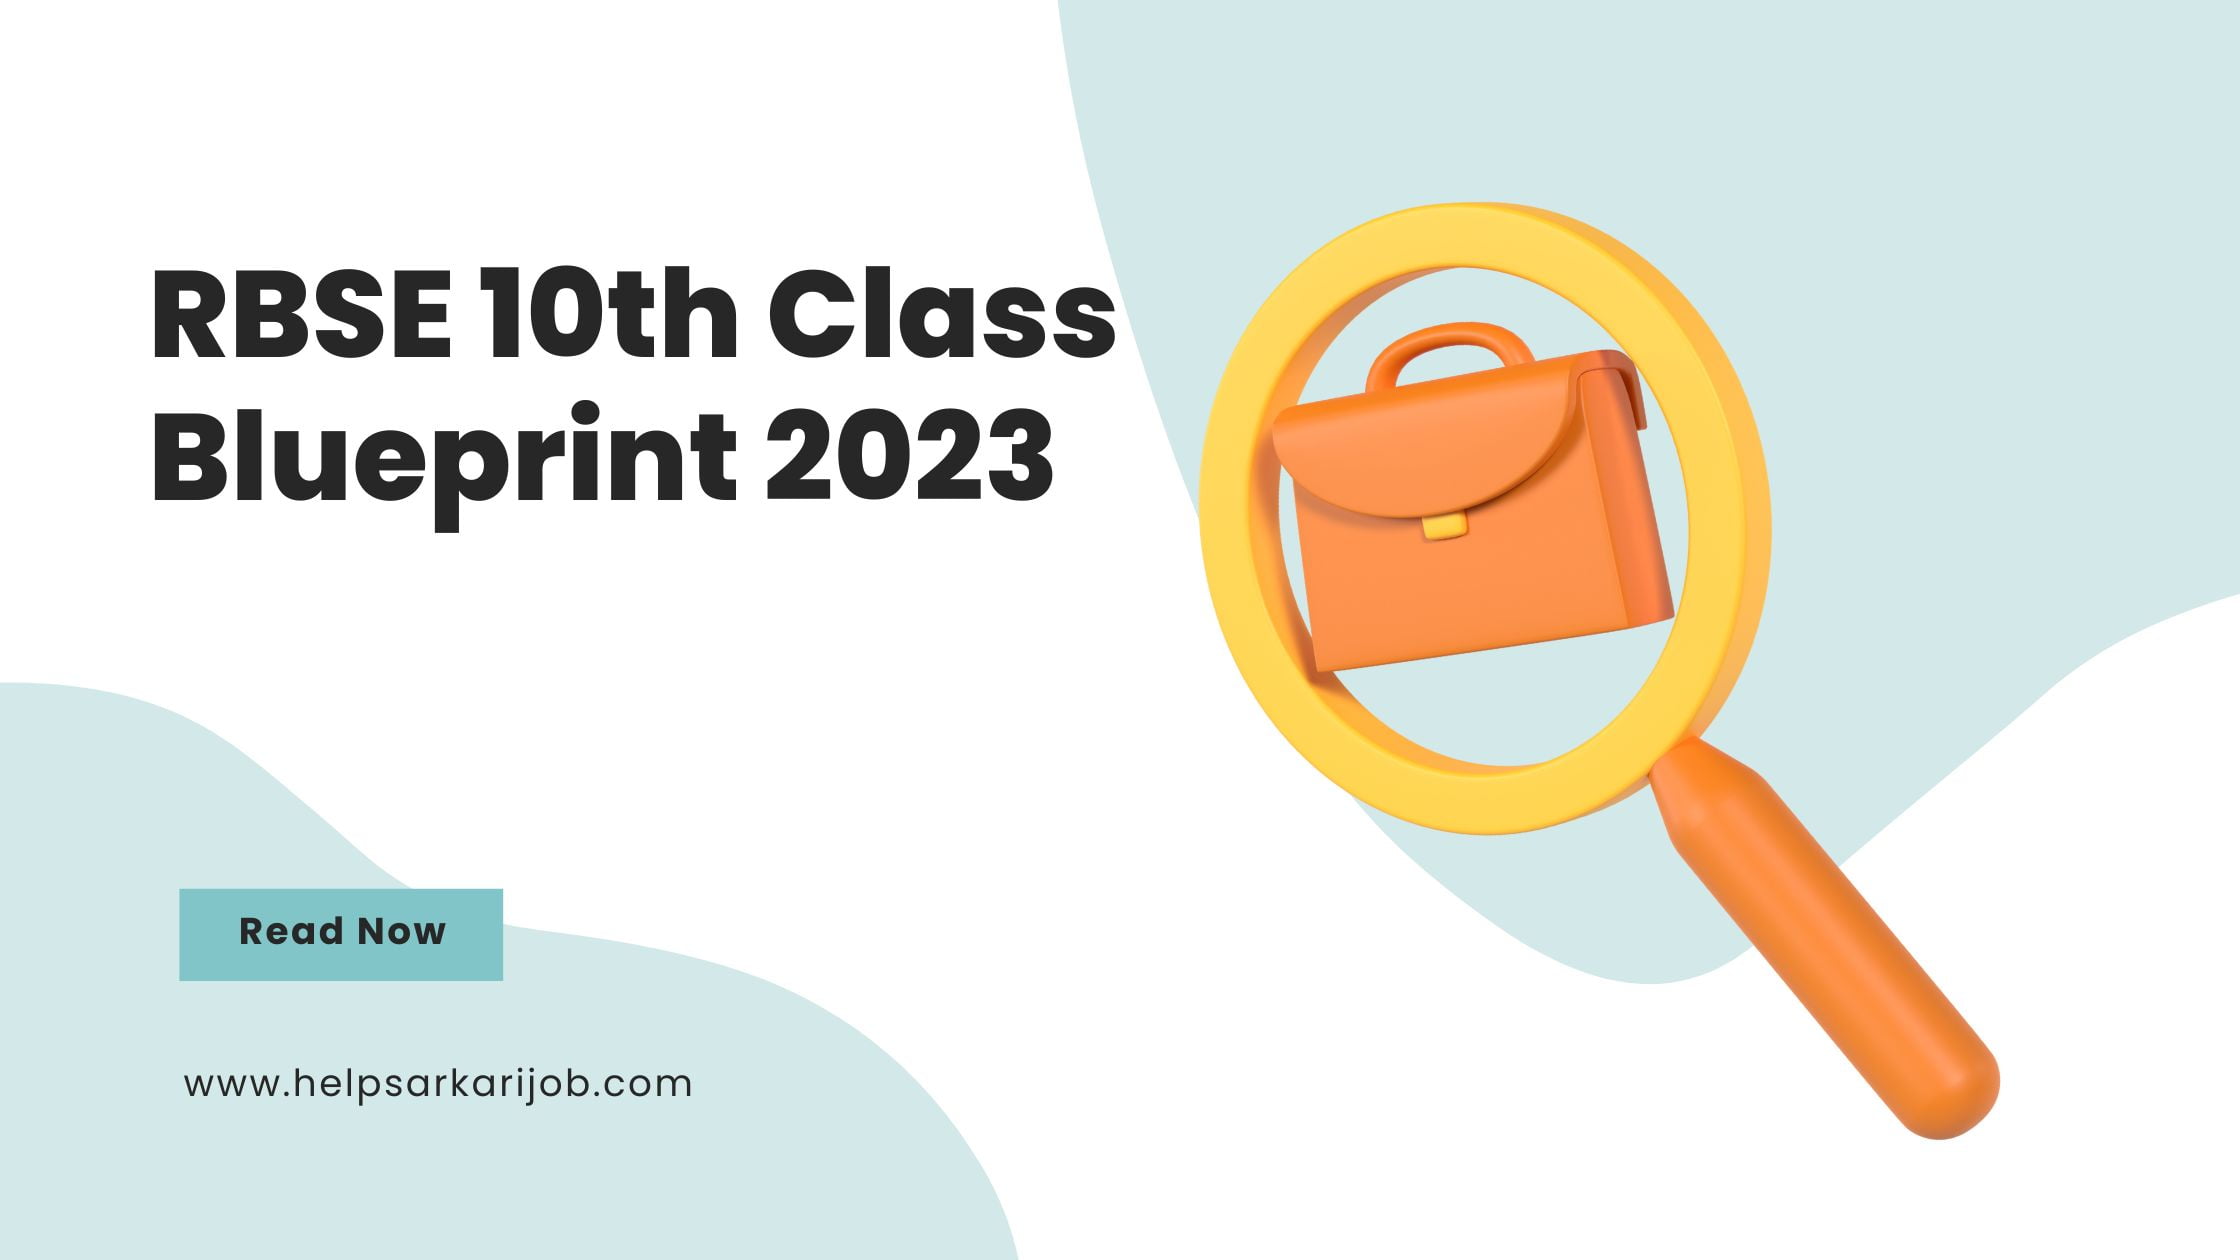 RBSE 10th Class Blueprint 2023